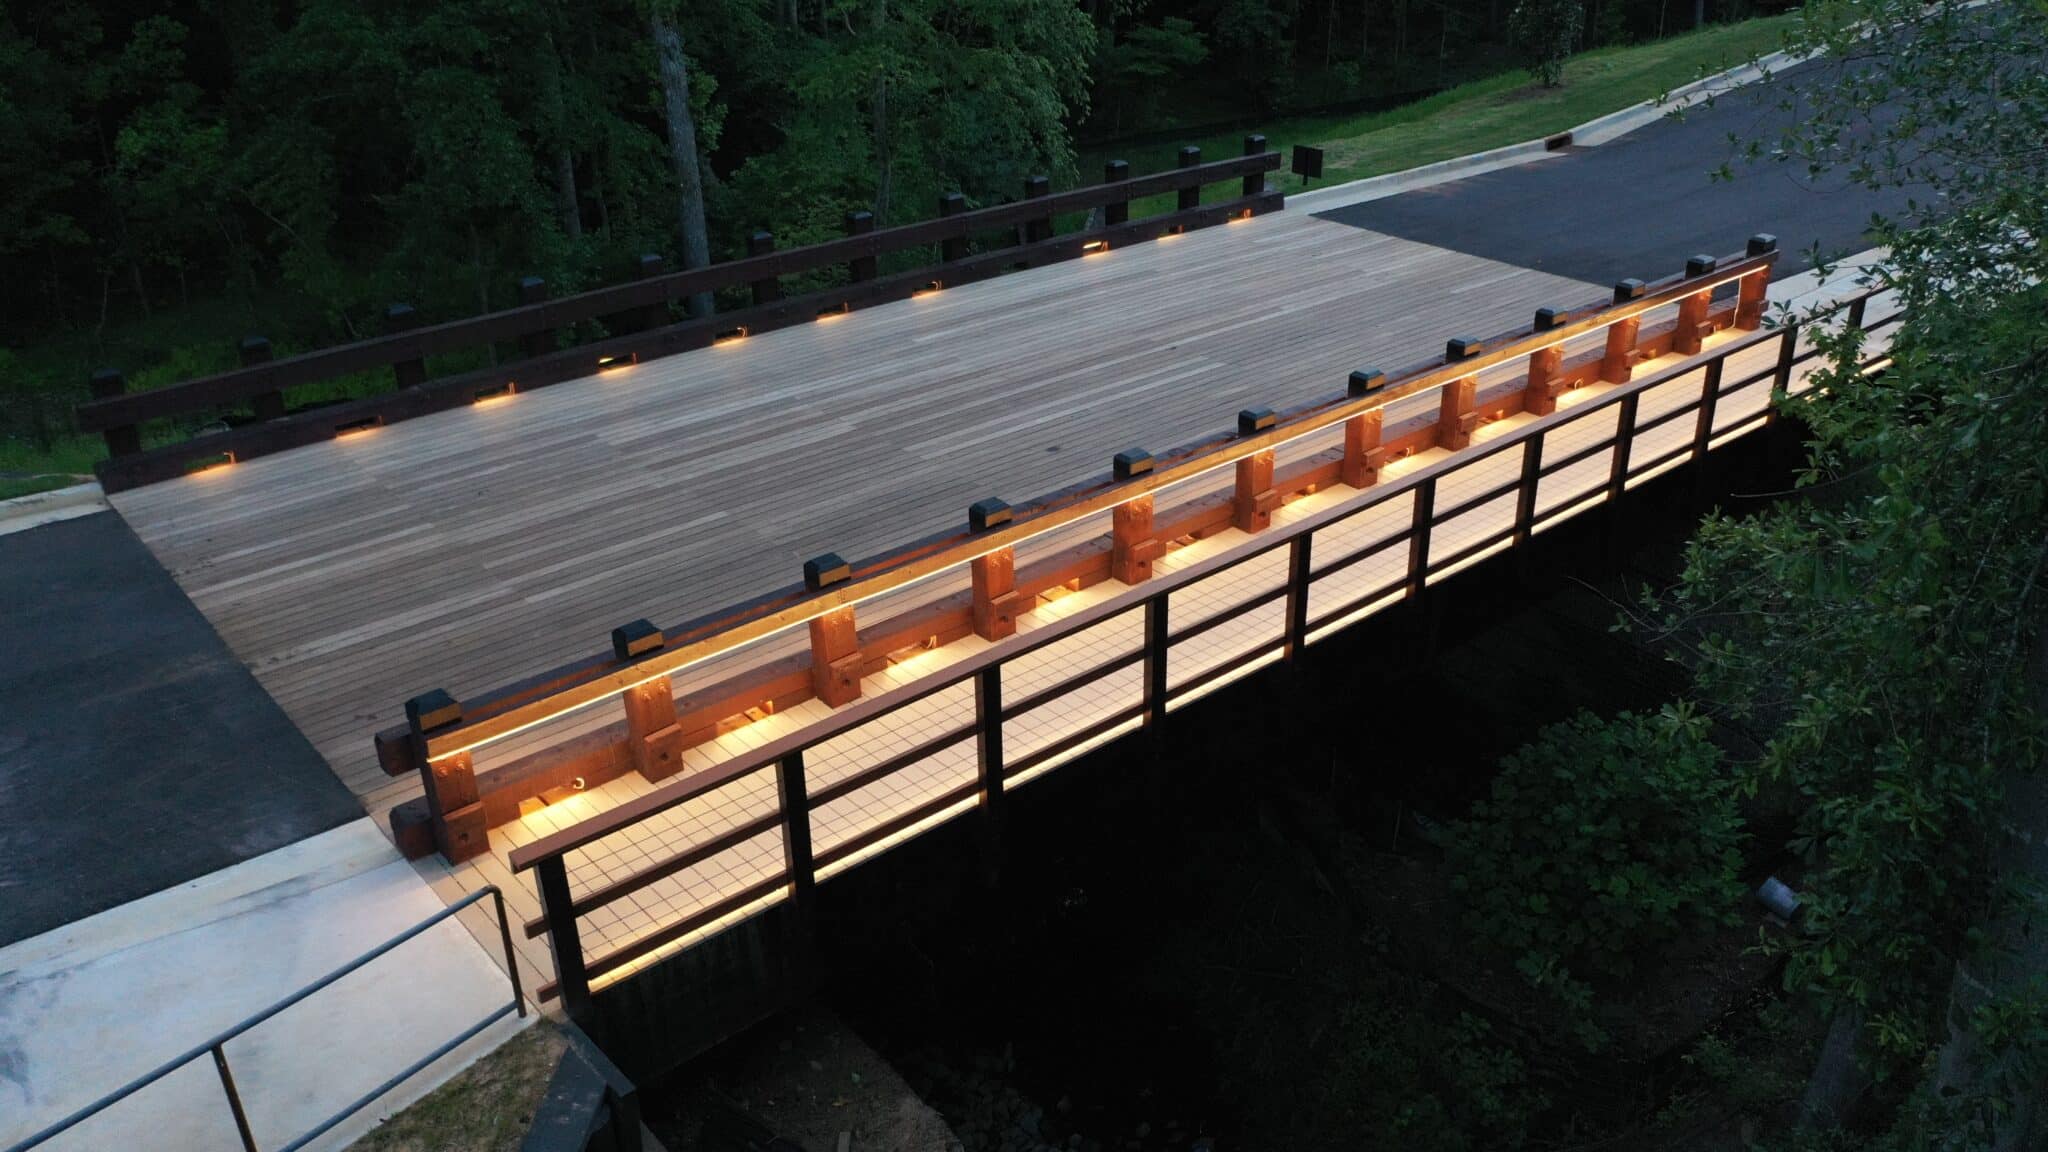 Elan Sweetwater Creek Timber Bridge Profile at Dusk in Lithia Springs, GA